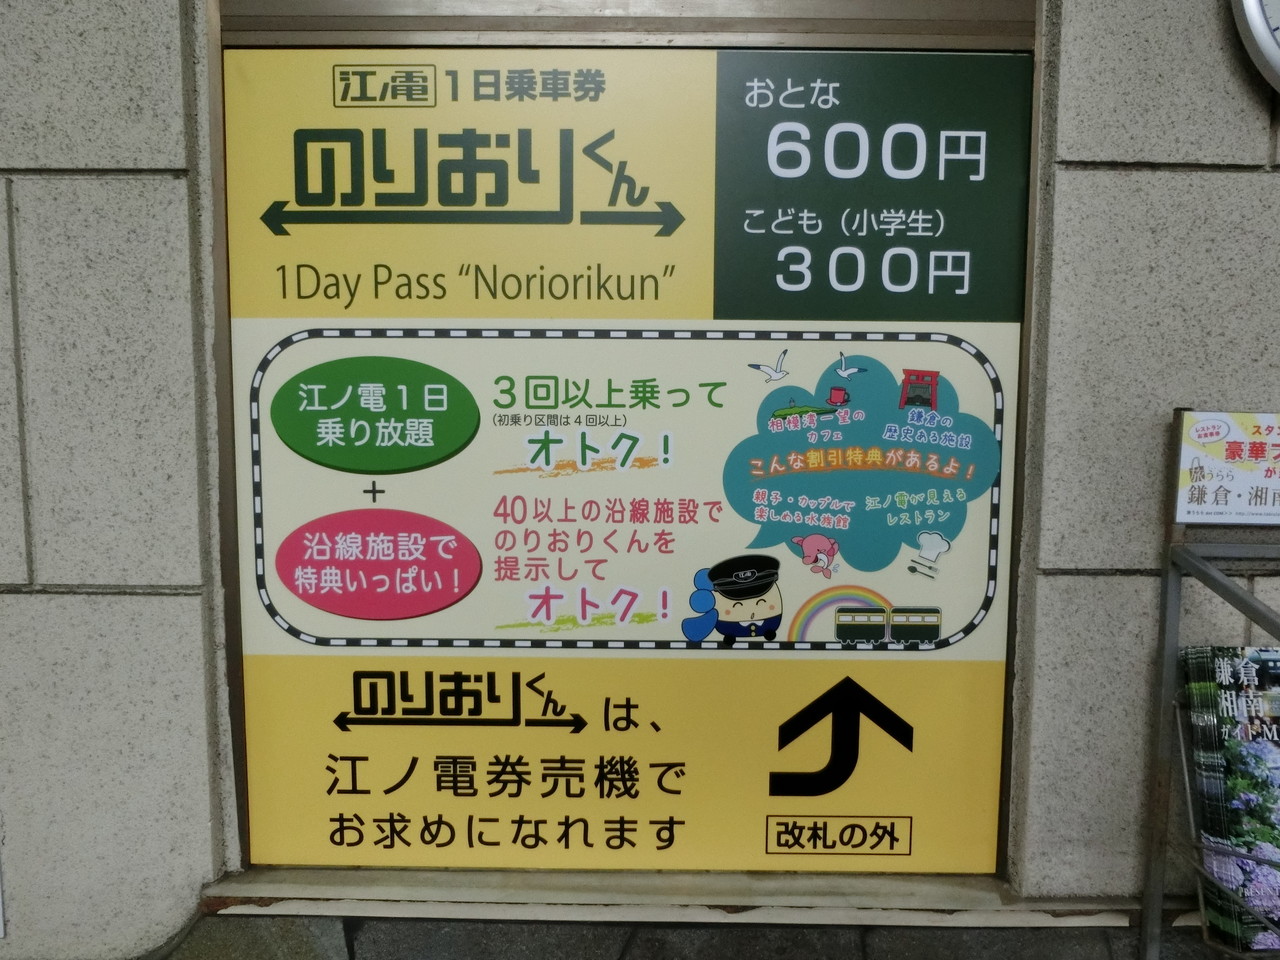 鎌倉 市 内 の 一定 区間 の 電車 や バス が 乗り 放題 に なる きっぷ